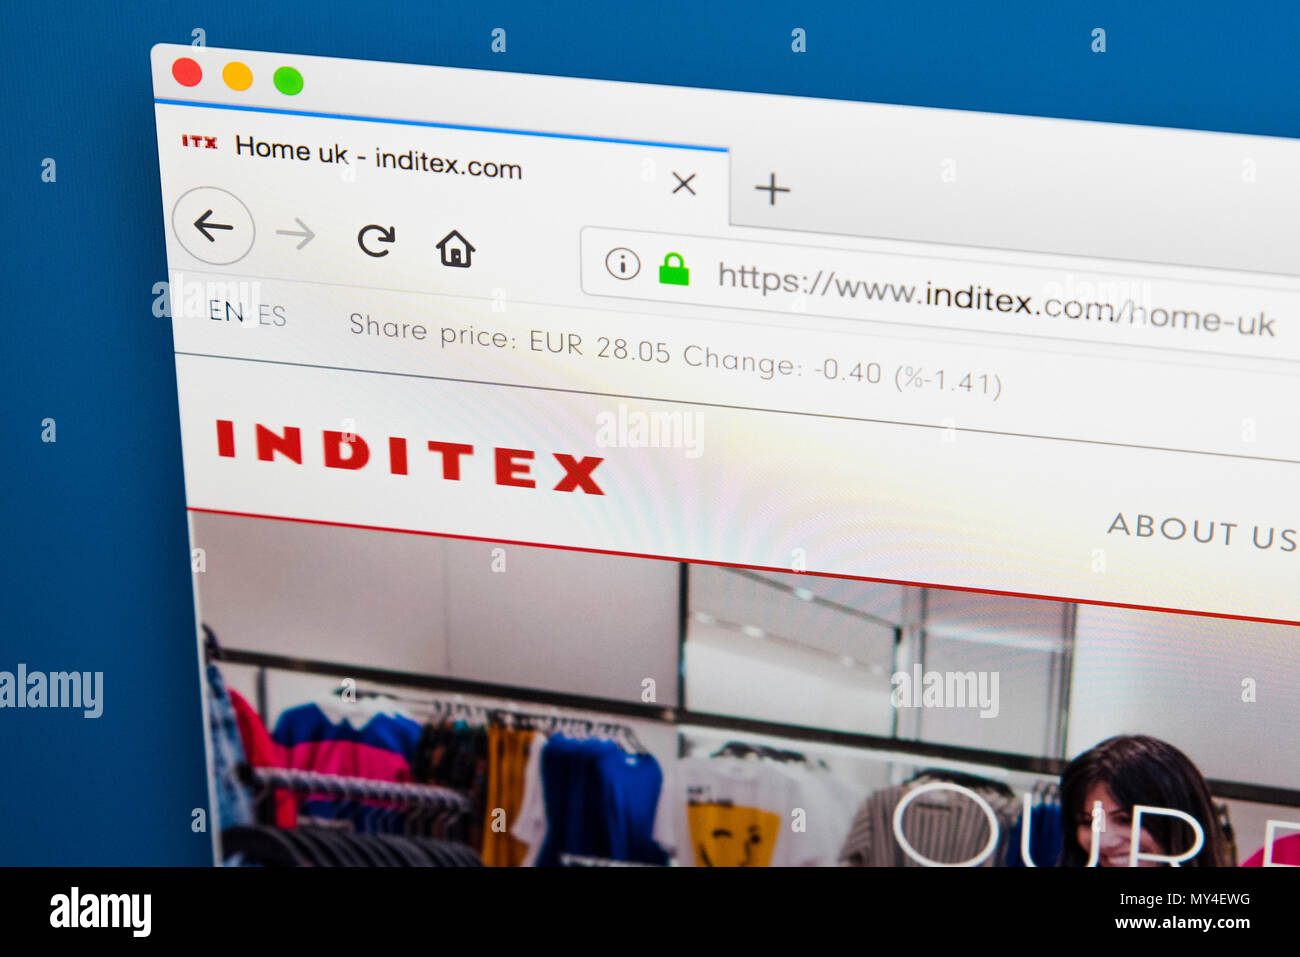 inditex website